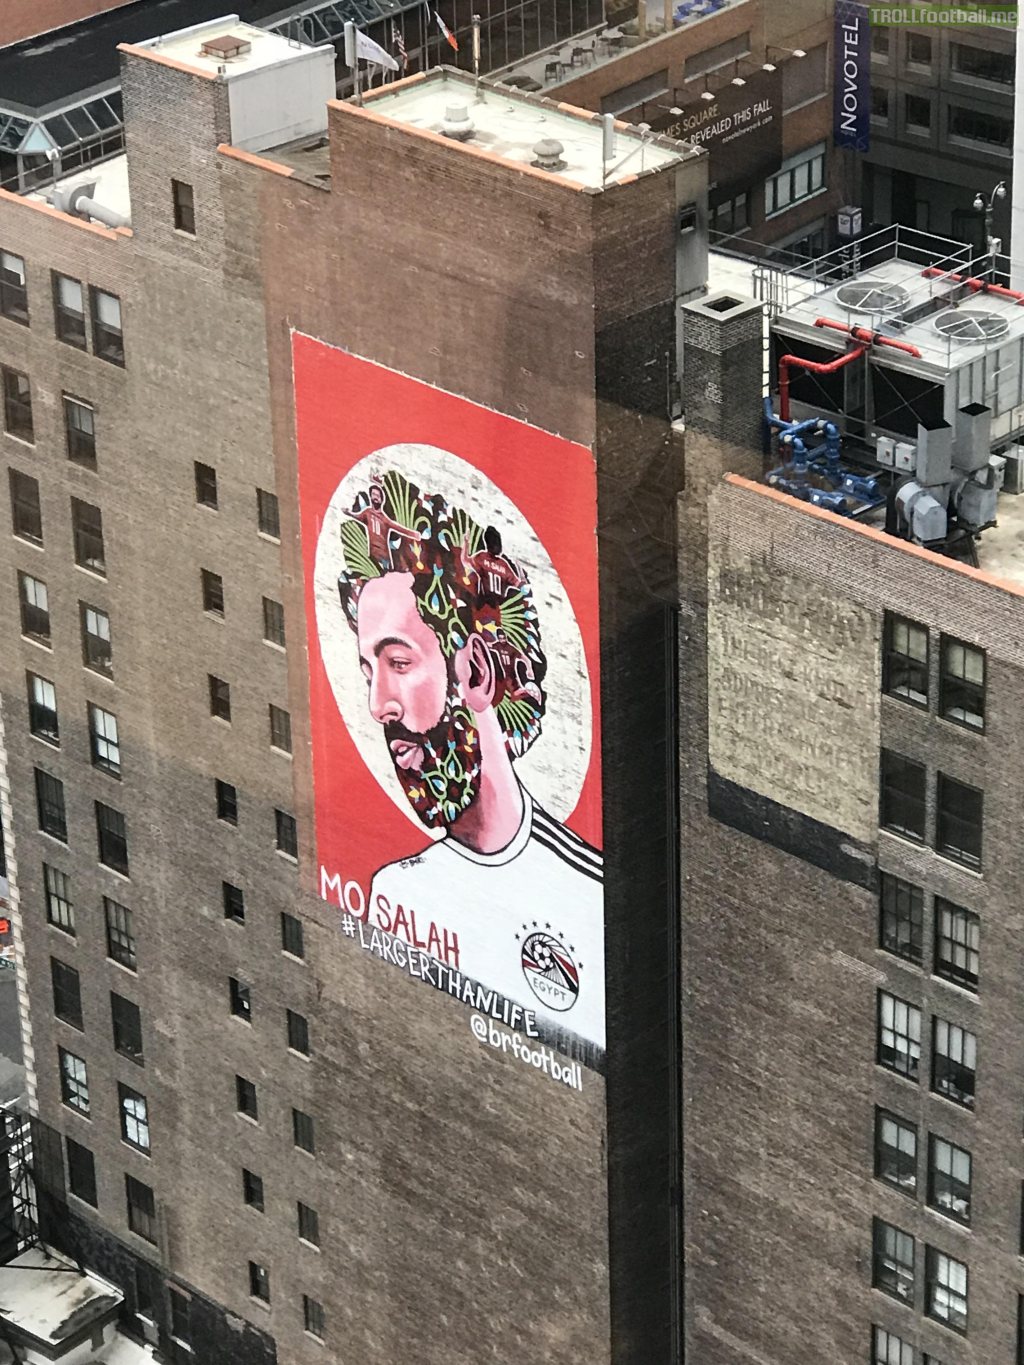 Massive Mohamed Salah mural outside my building on 50th Street, Manhattan